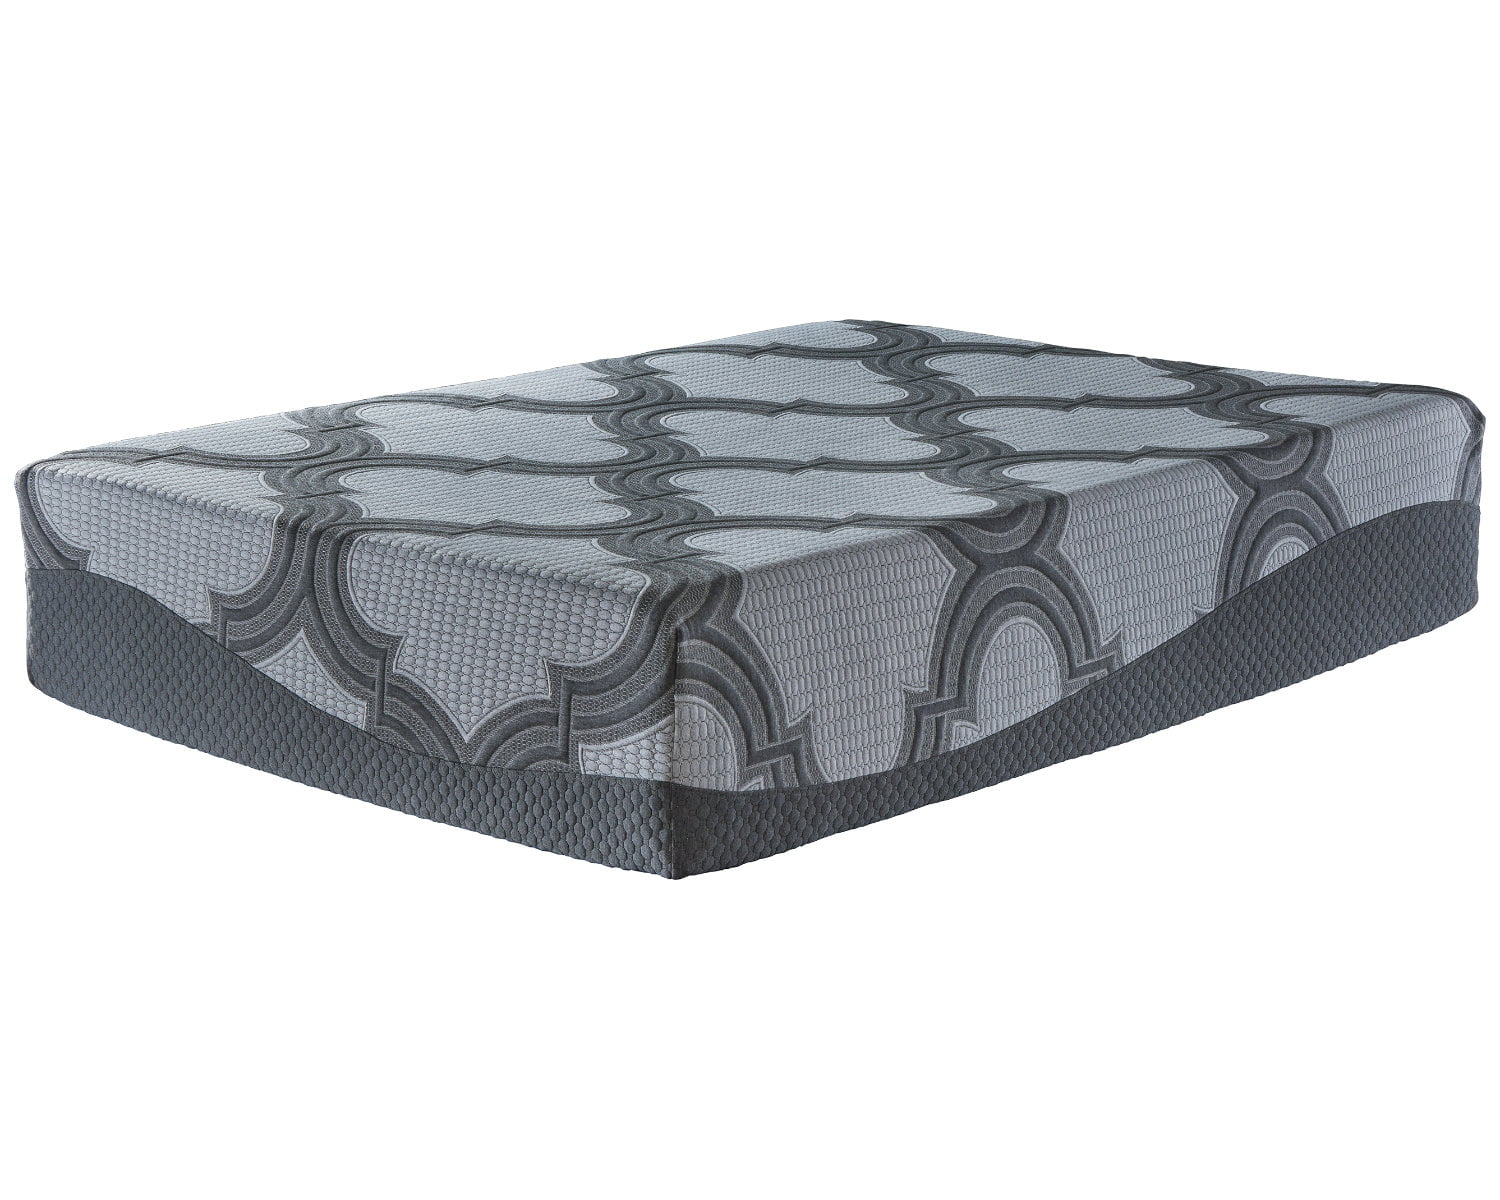 avondale plush queen mattress